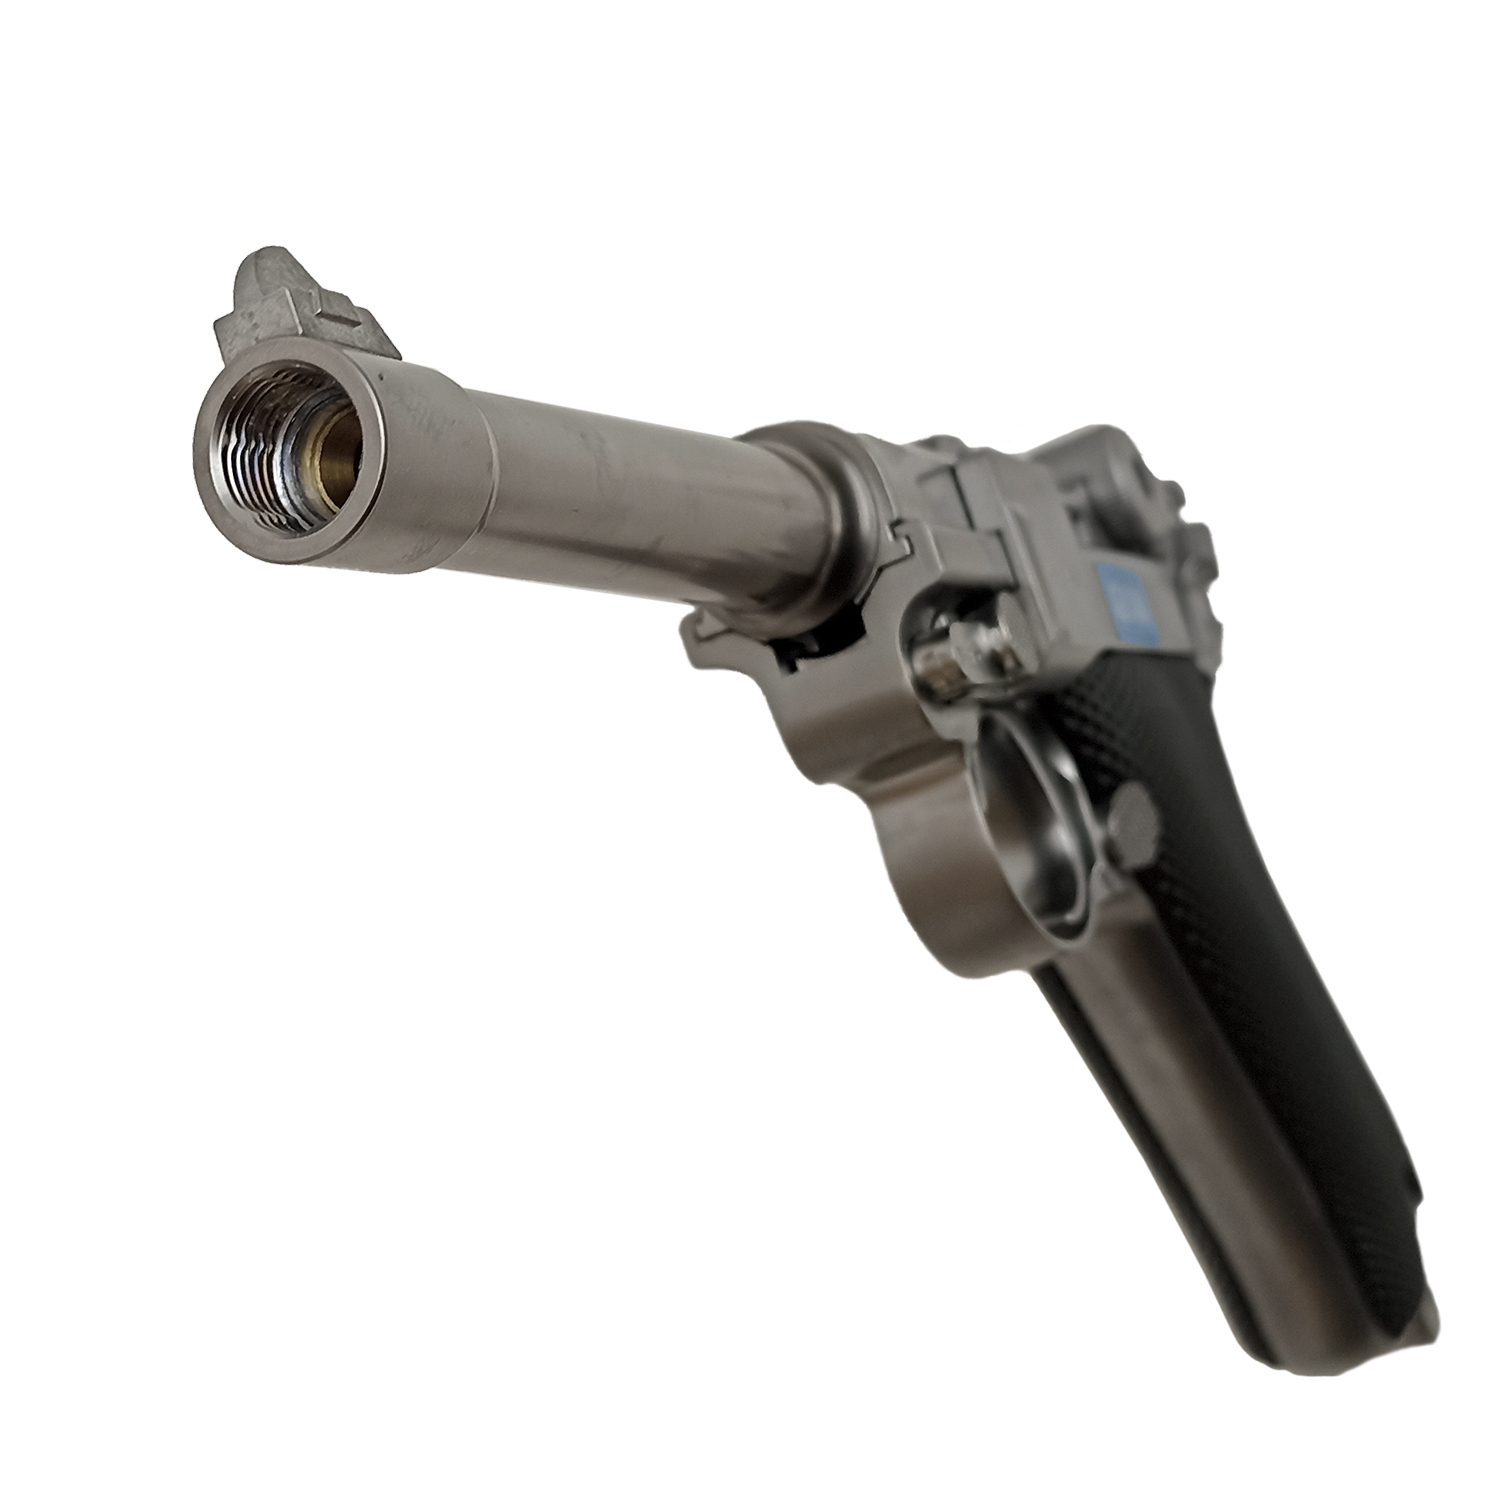 Пистолет страйкбольный (WE) P-08 4", металл, хромированный, GP401S, WE-P004 / WE-040